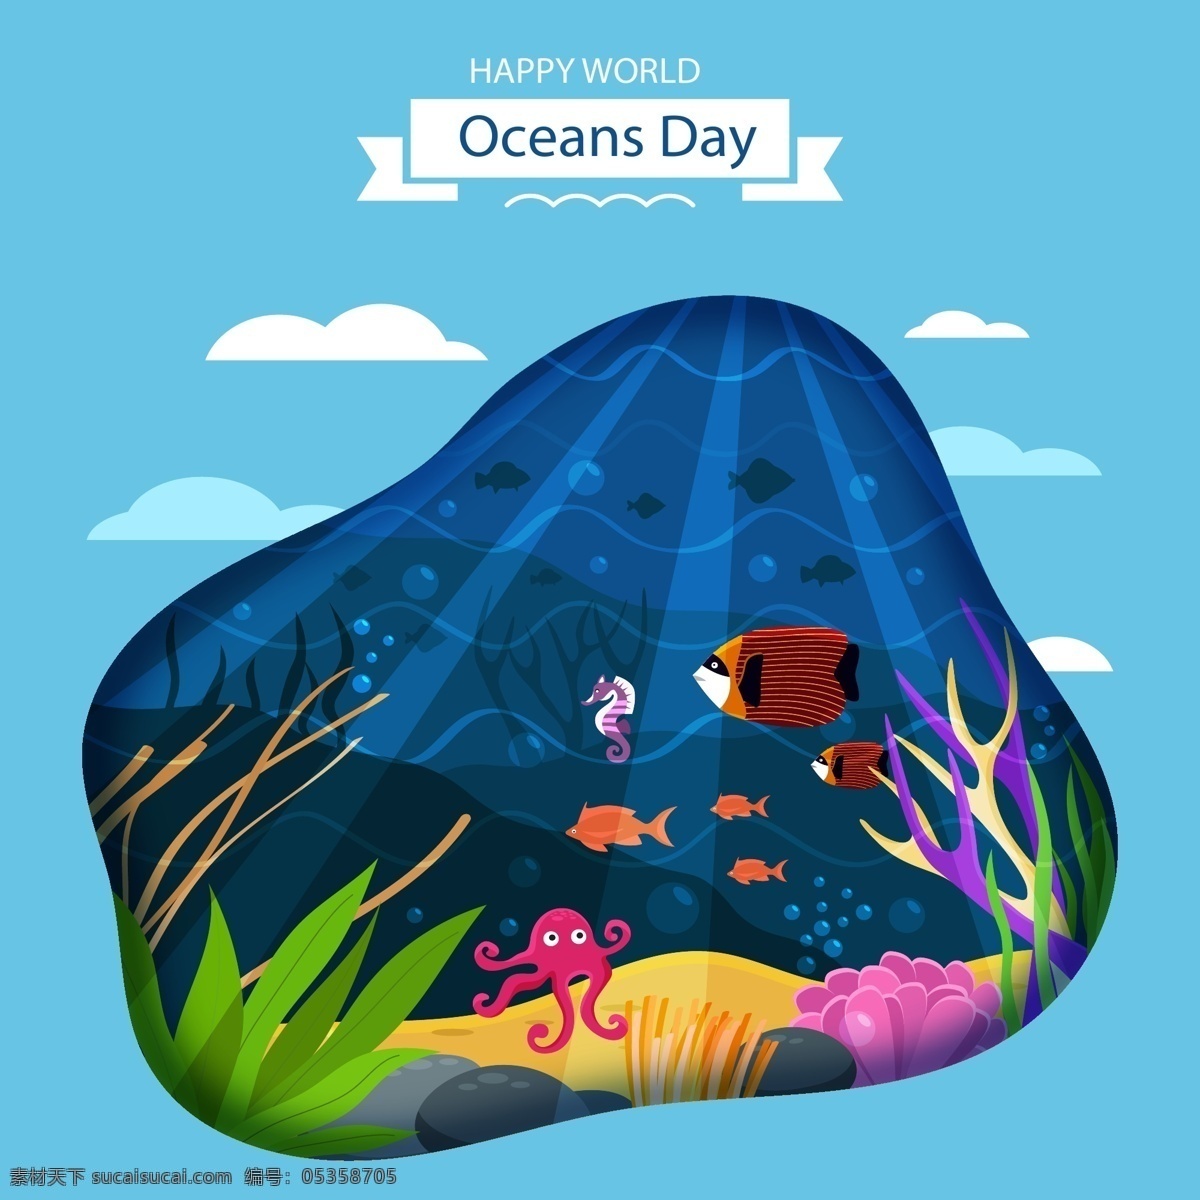 海底世界 海洋 大海 封面 海洋封面 海报 海洋生物 卡通风景 手绘风景 自然风景 设计素材 背景图片 生物世界